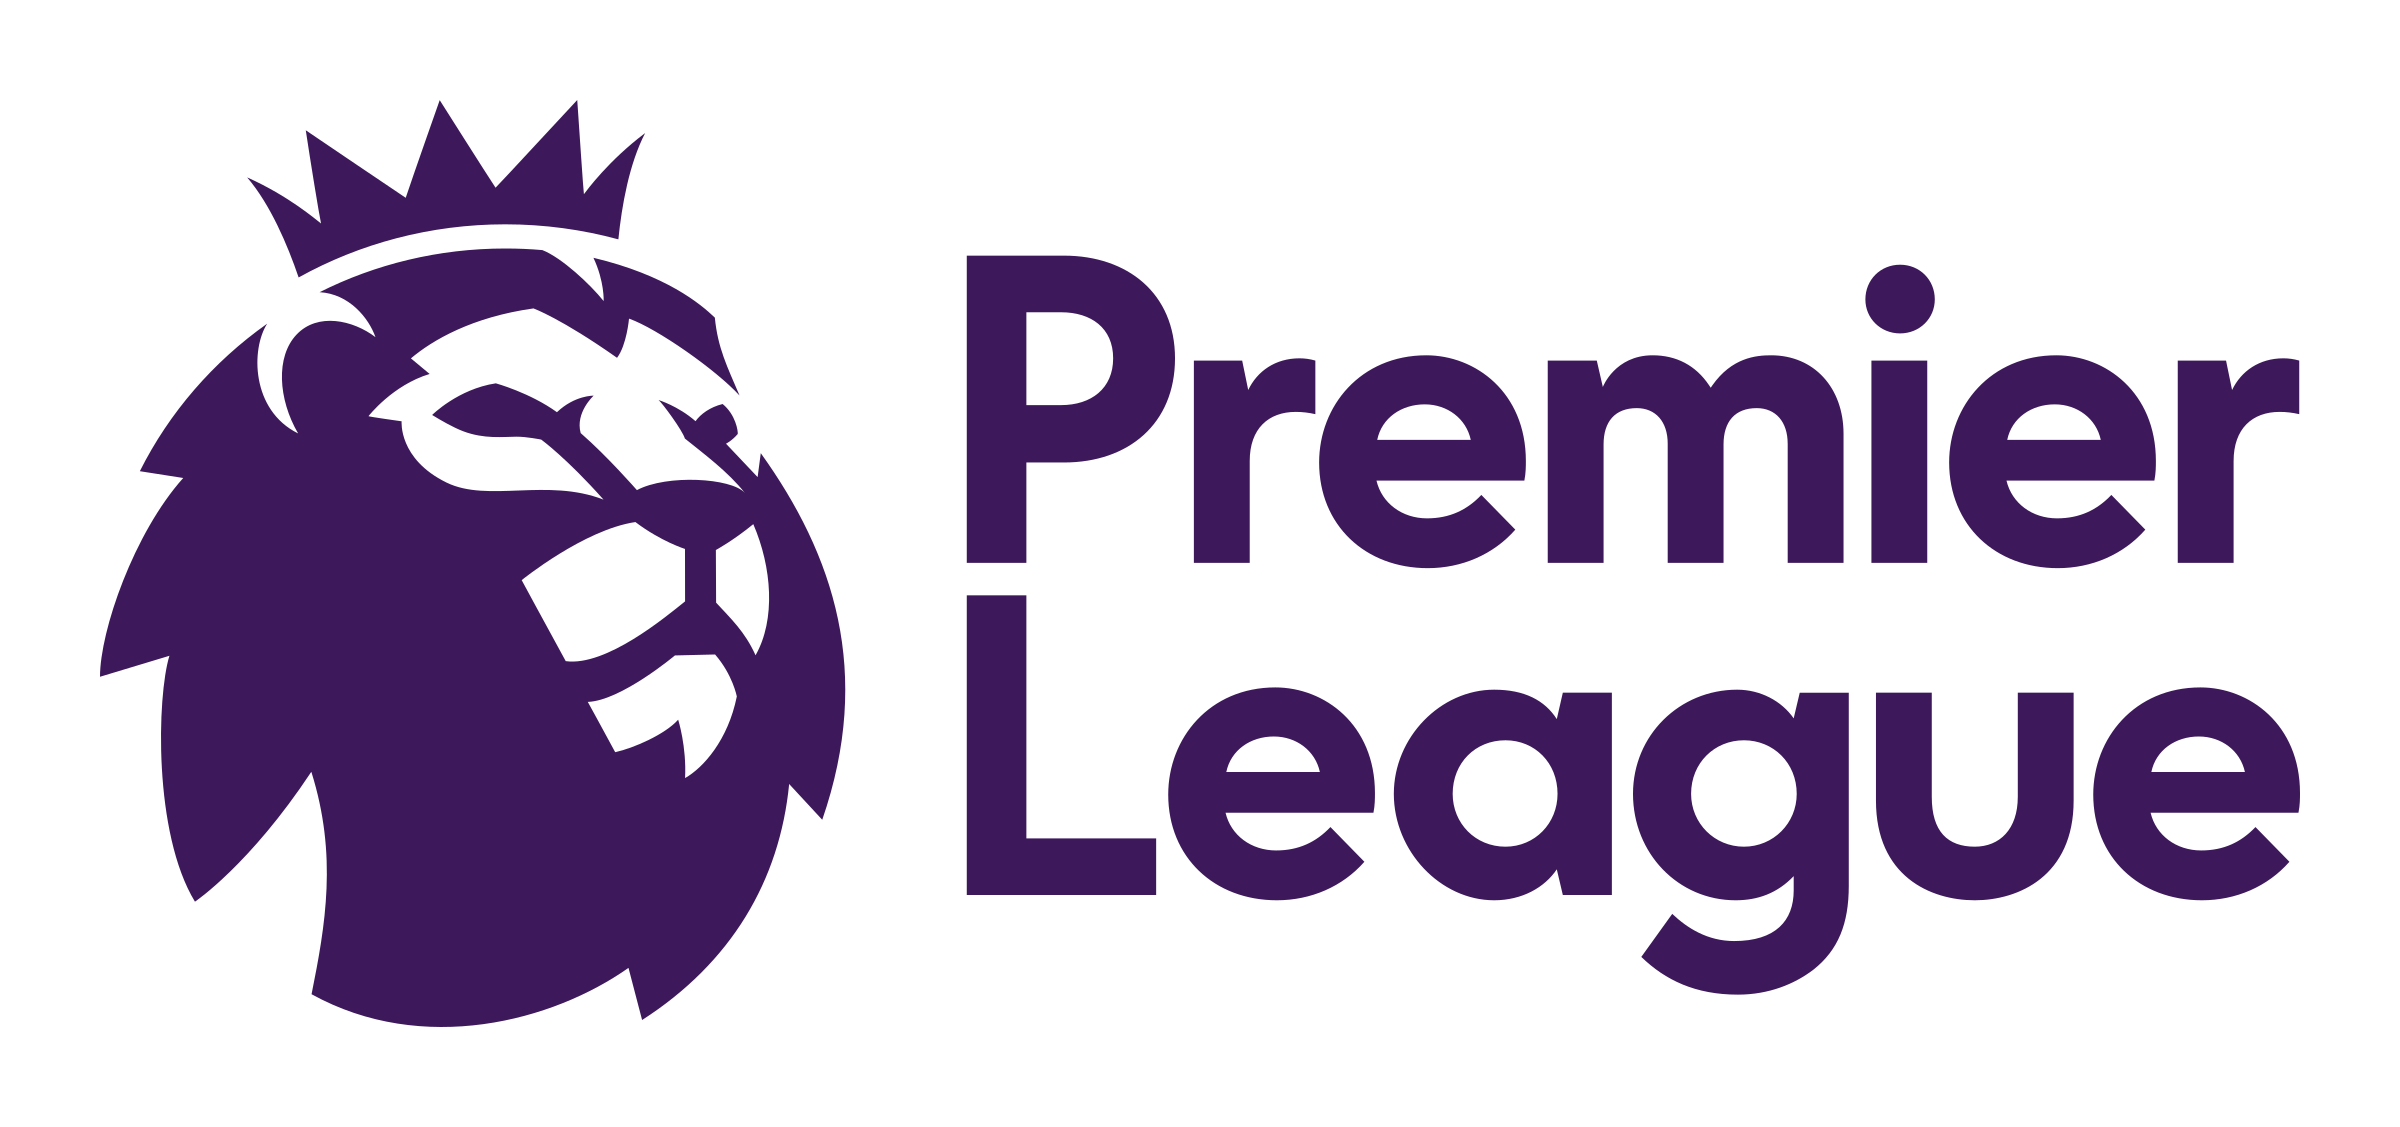 Russian Premier League Logo A